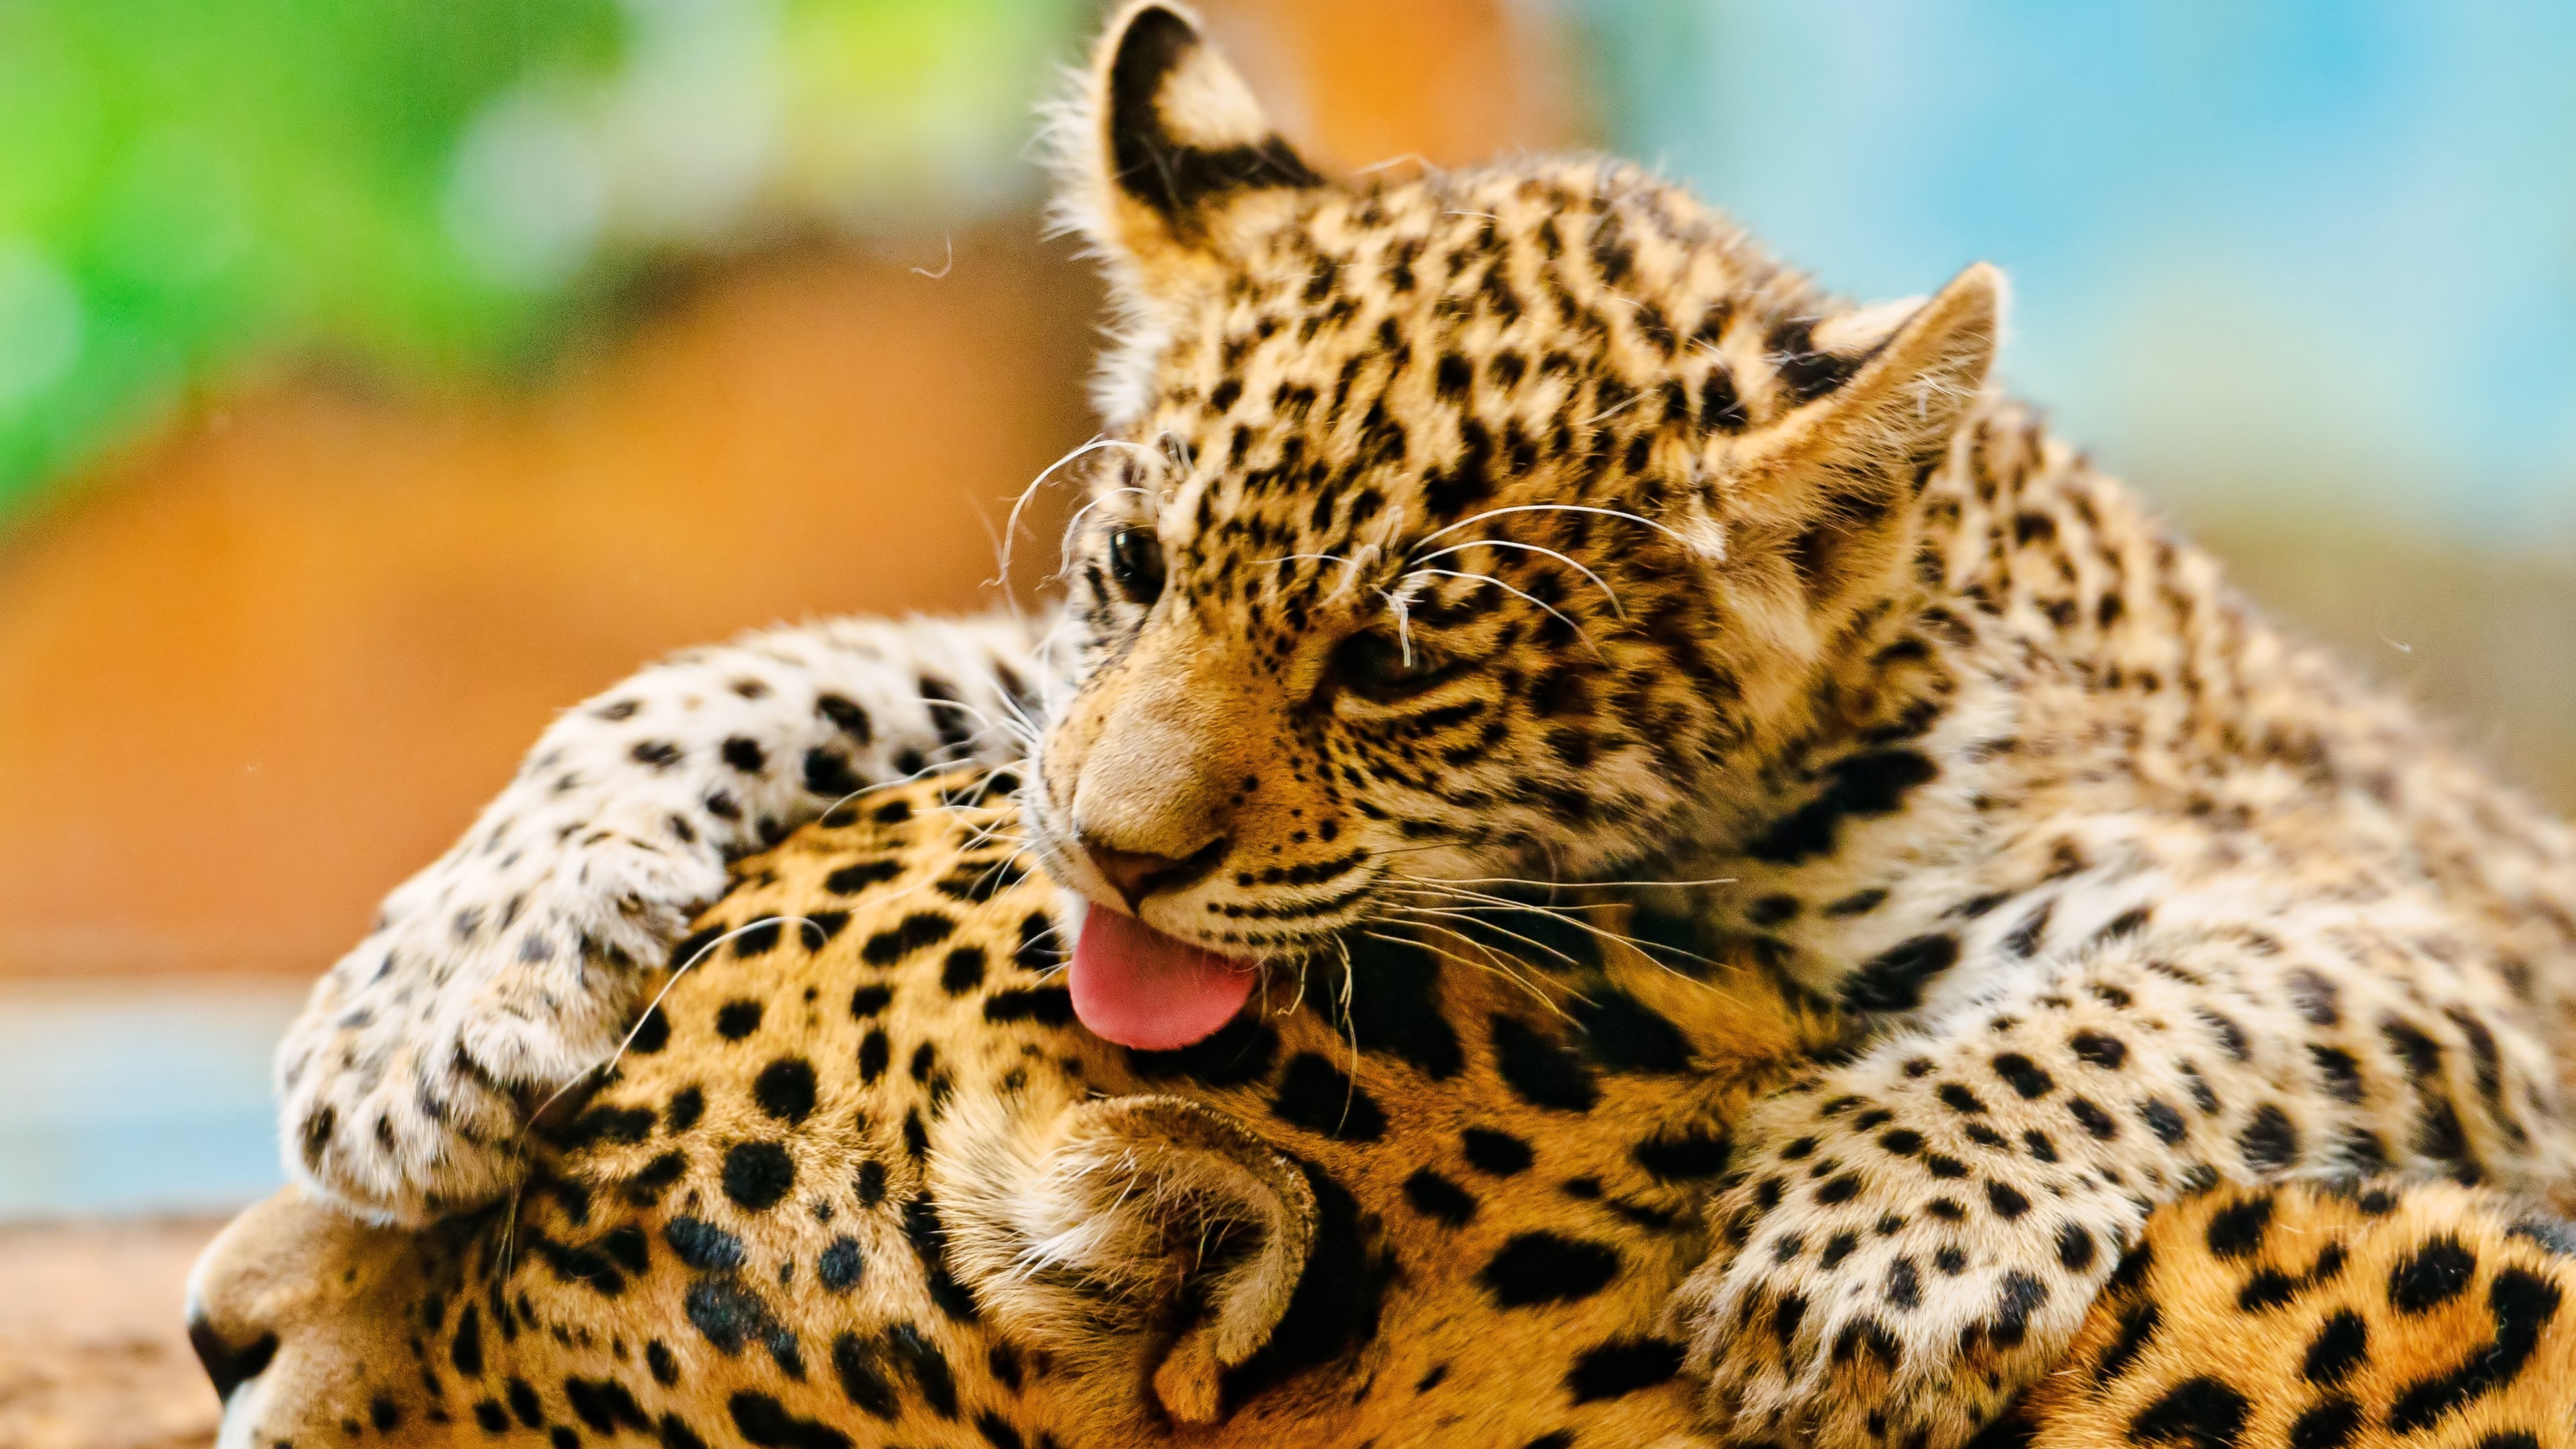 عکس بسیار زیبا و دیدنی از دوتا یوزپلنگ کوچولو و کیوت 